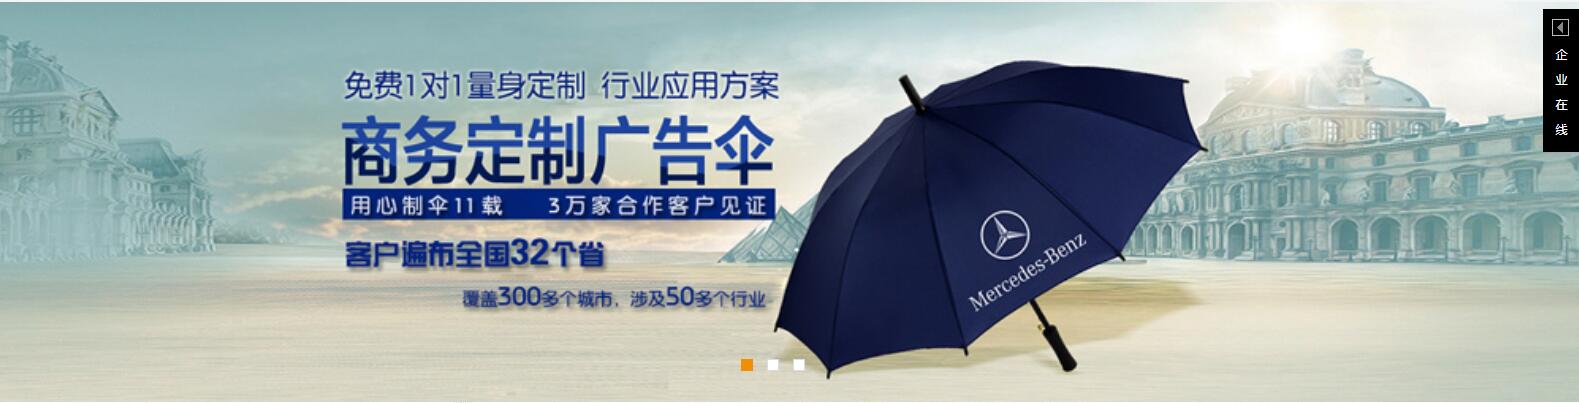 广州雨伞厂、广州雨伞定制、广州雨伞工厂